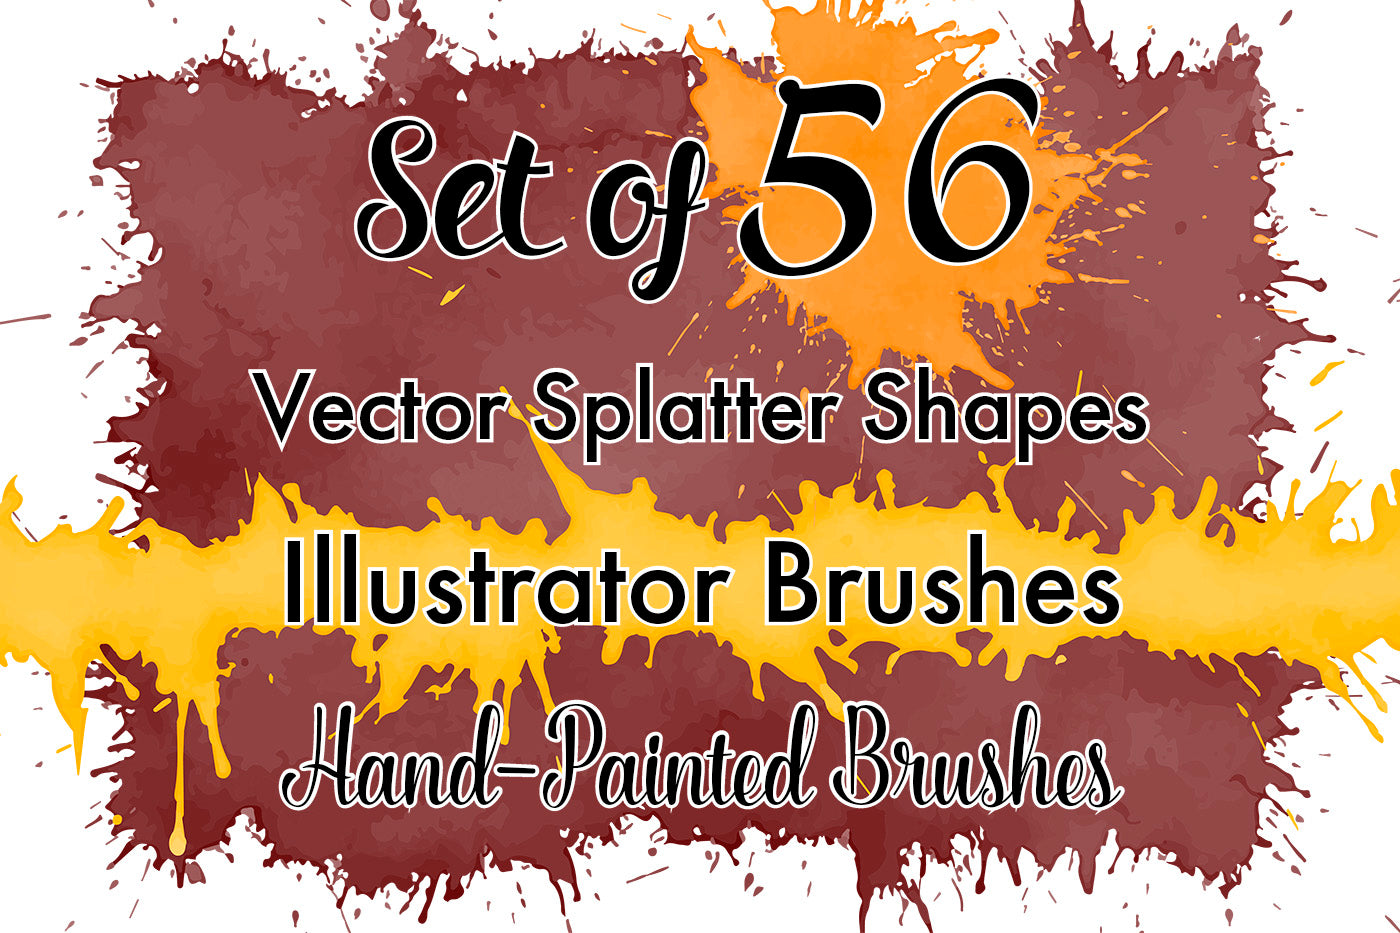 Vector Splatter Shapes - Illustrator Brushes